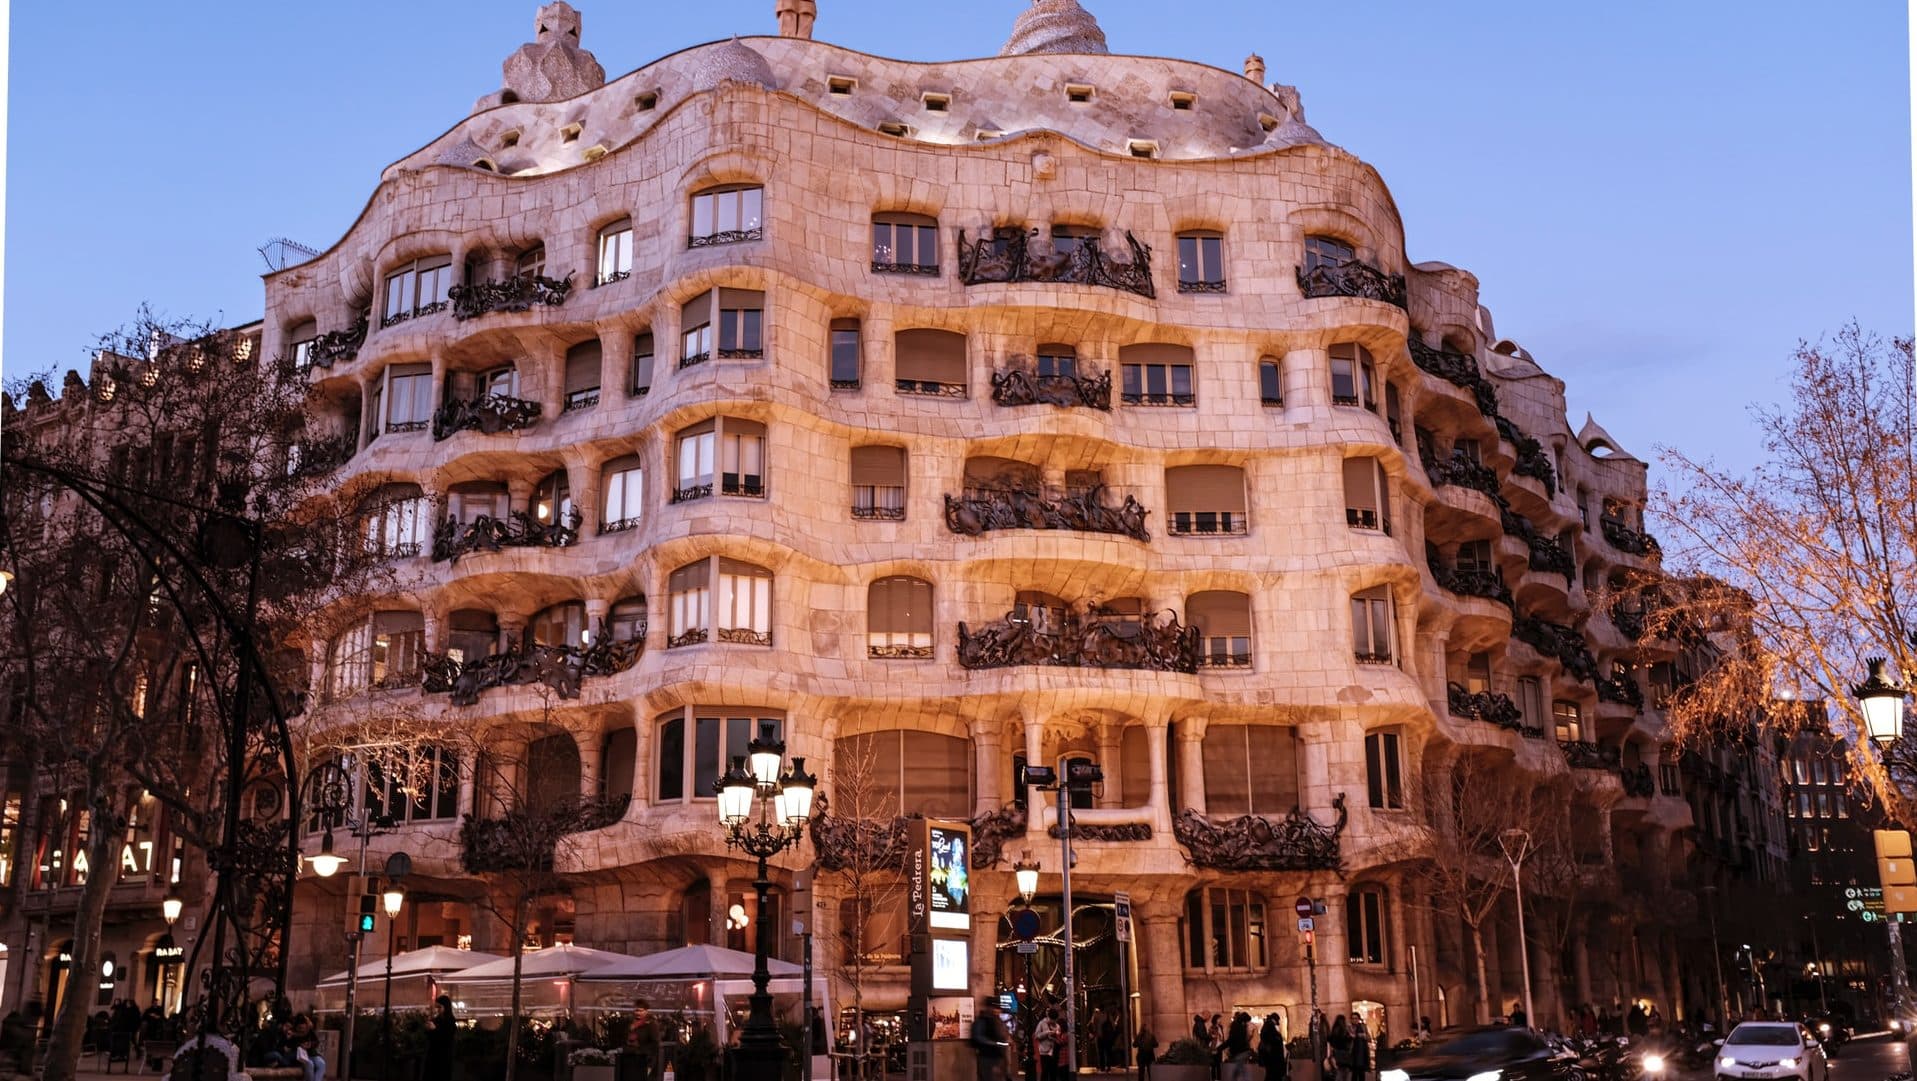 La Pedrera è uno dei capolavori architettonici di Barcellona